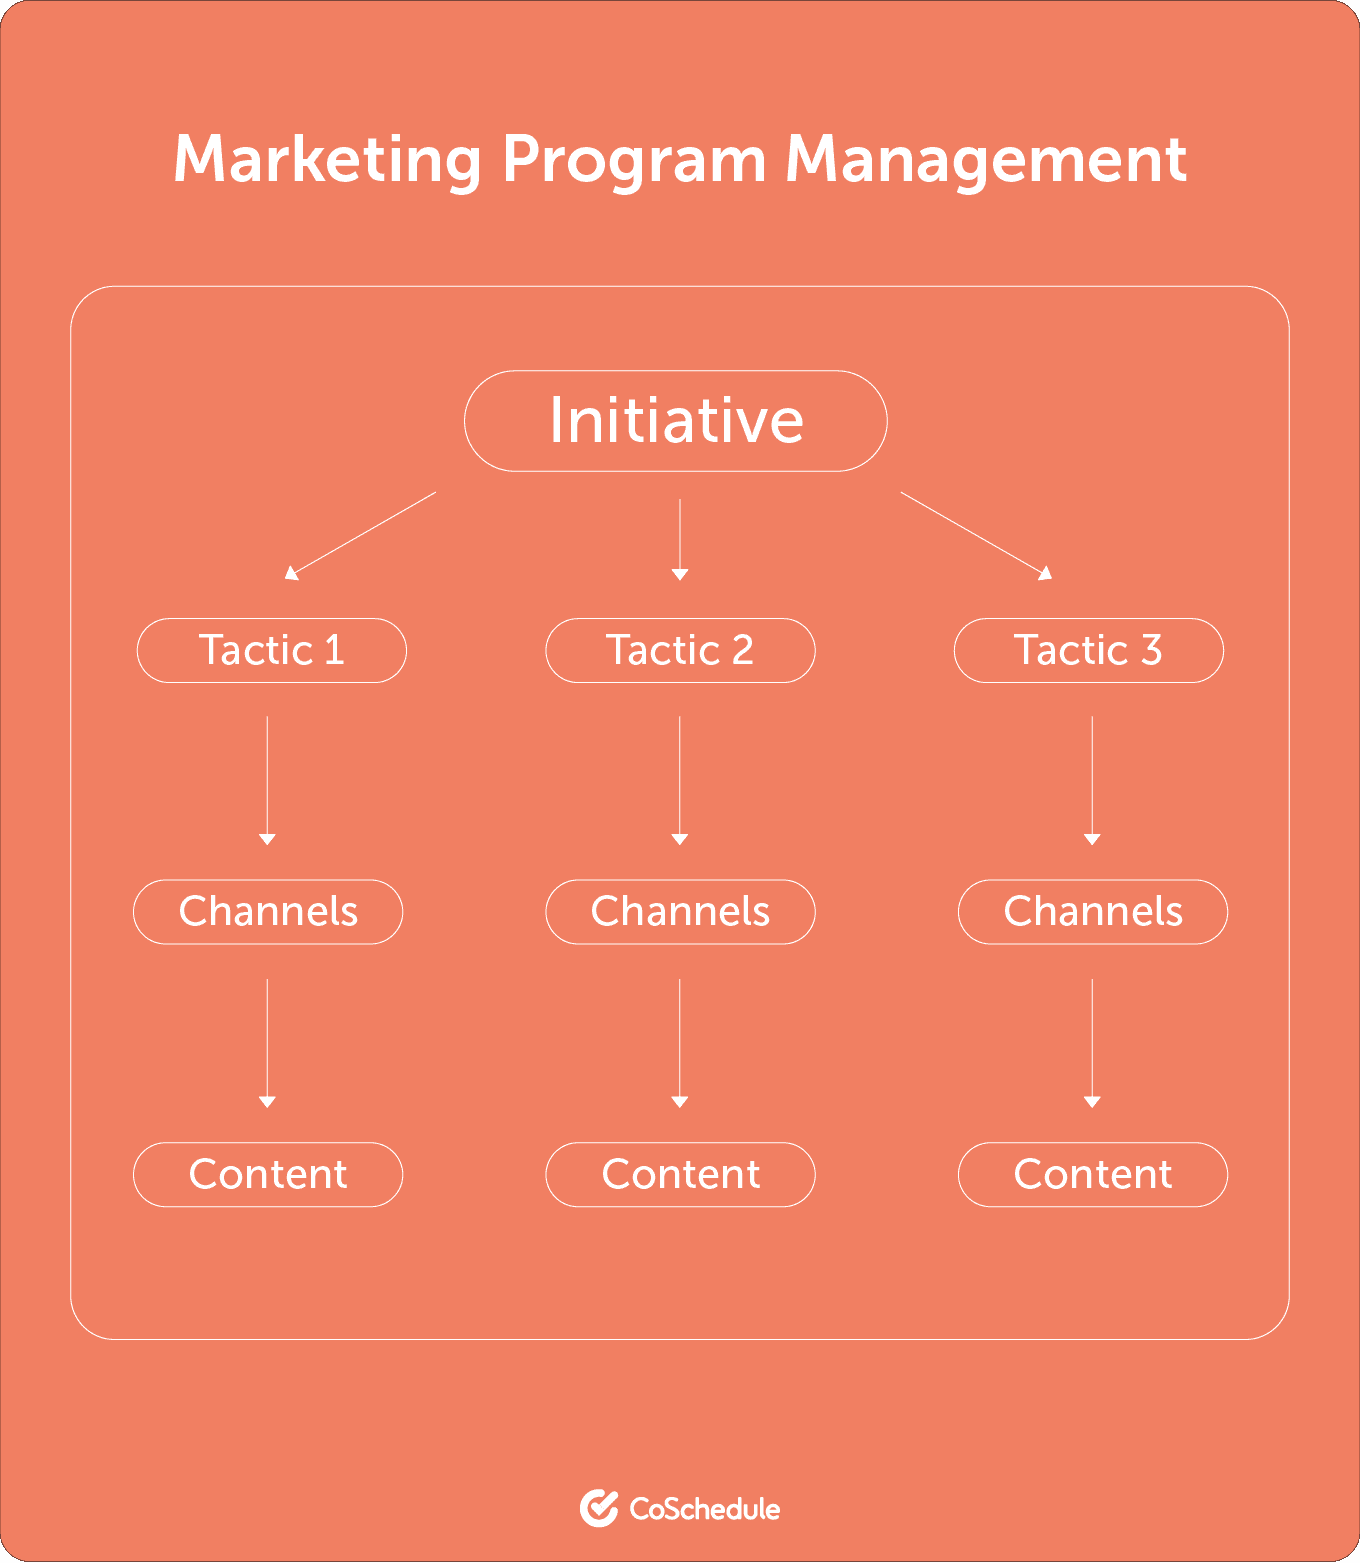 Marketing Program Management steps